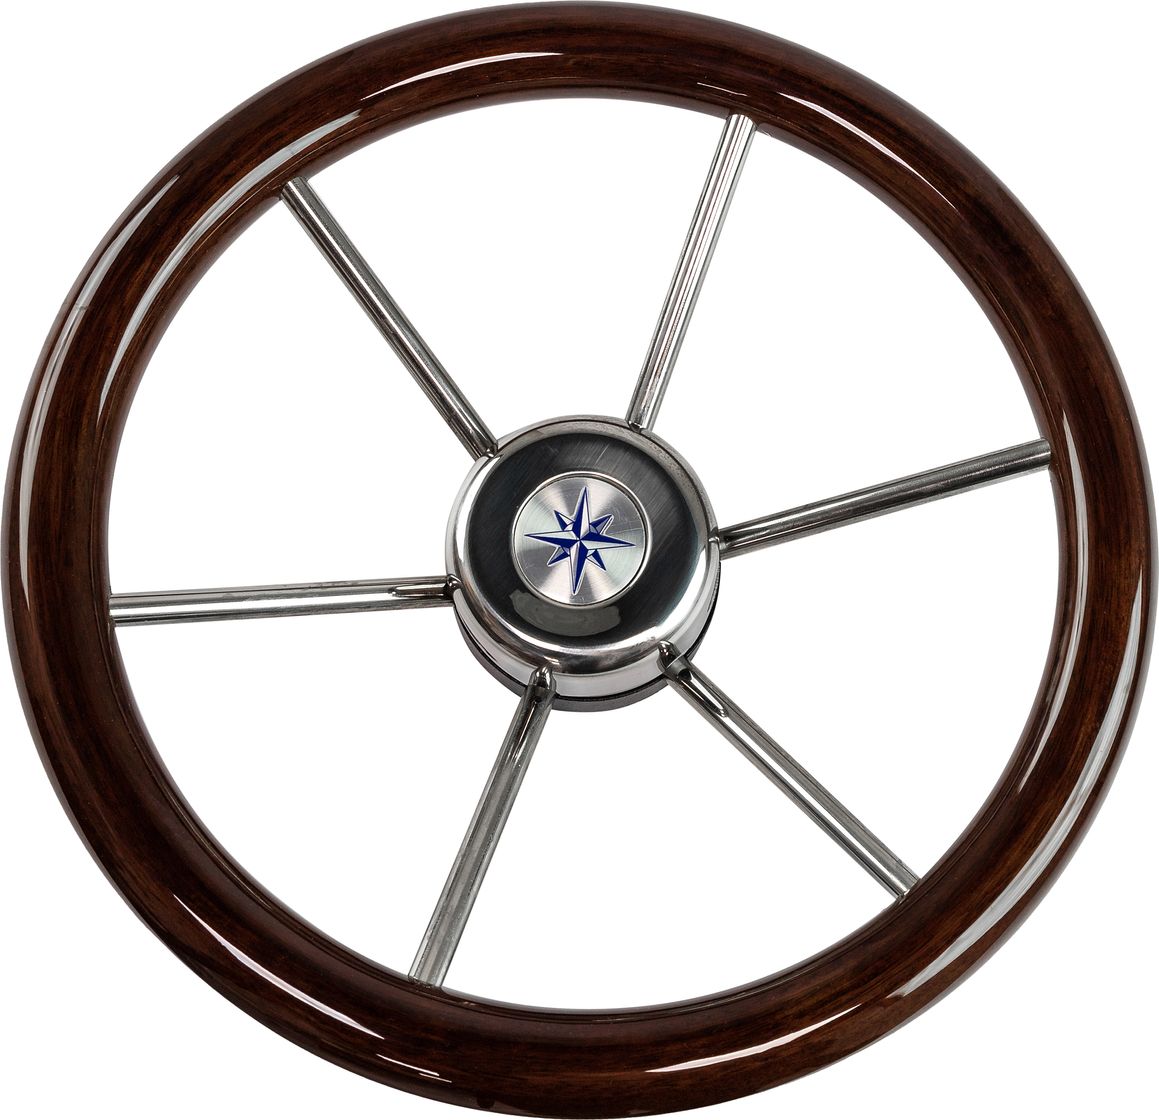 Рулевое колесо LEADER WOOD деревянный обод серебряные спицы д. 340 мм VN7340-33 рулевое колесо leader wood деревянный обод серебряные спицы д 390 мм vn7390 33